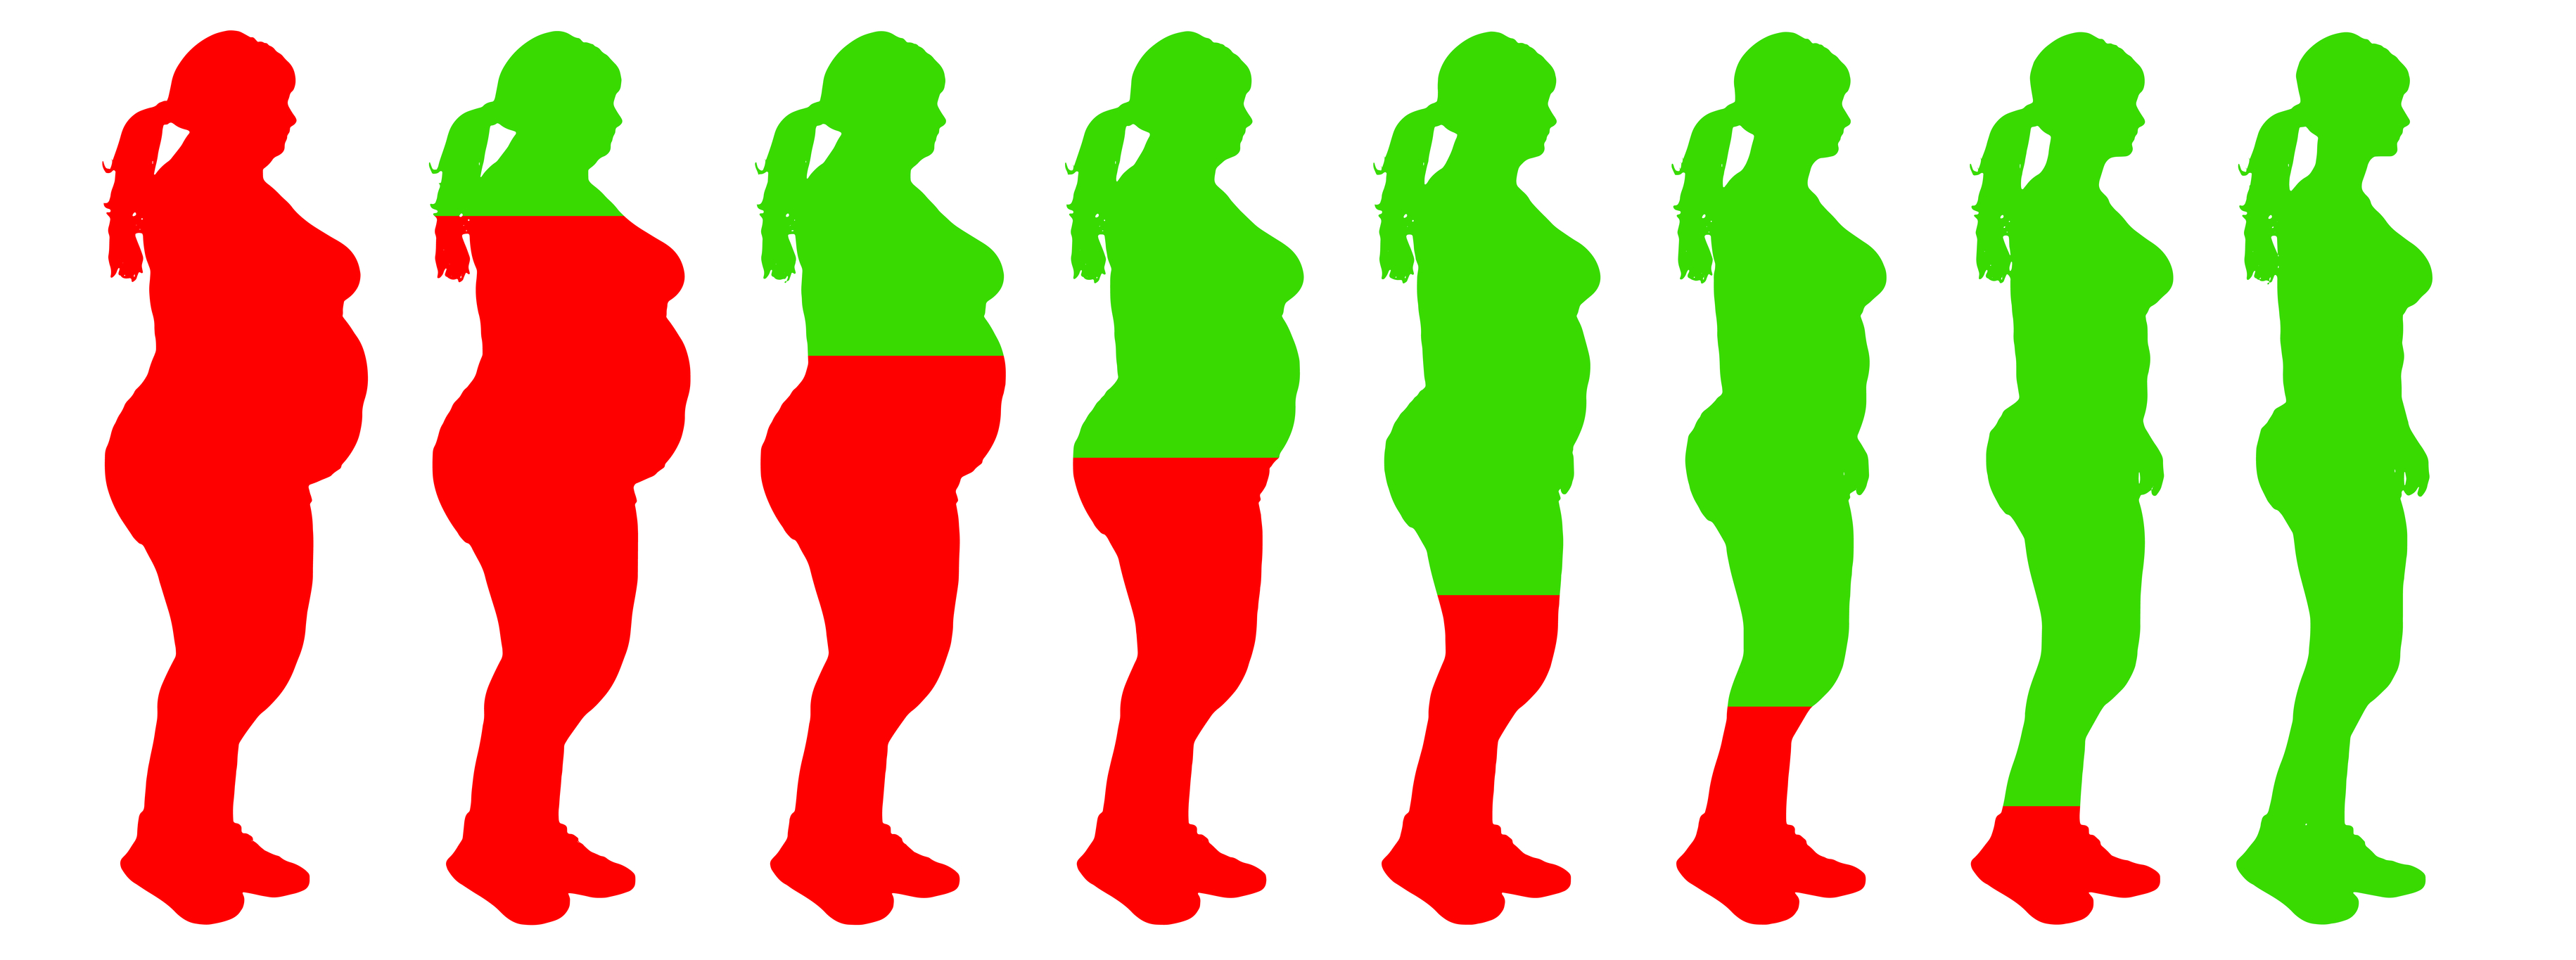 βοήθεια θέλω να χάσω βάρος 2020 ορμονική ανισορροπία πώς να χάσετε βάρος πιο γρήγορα